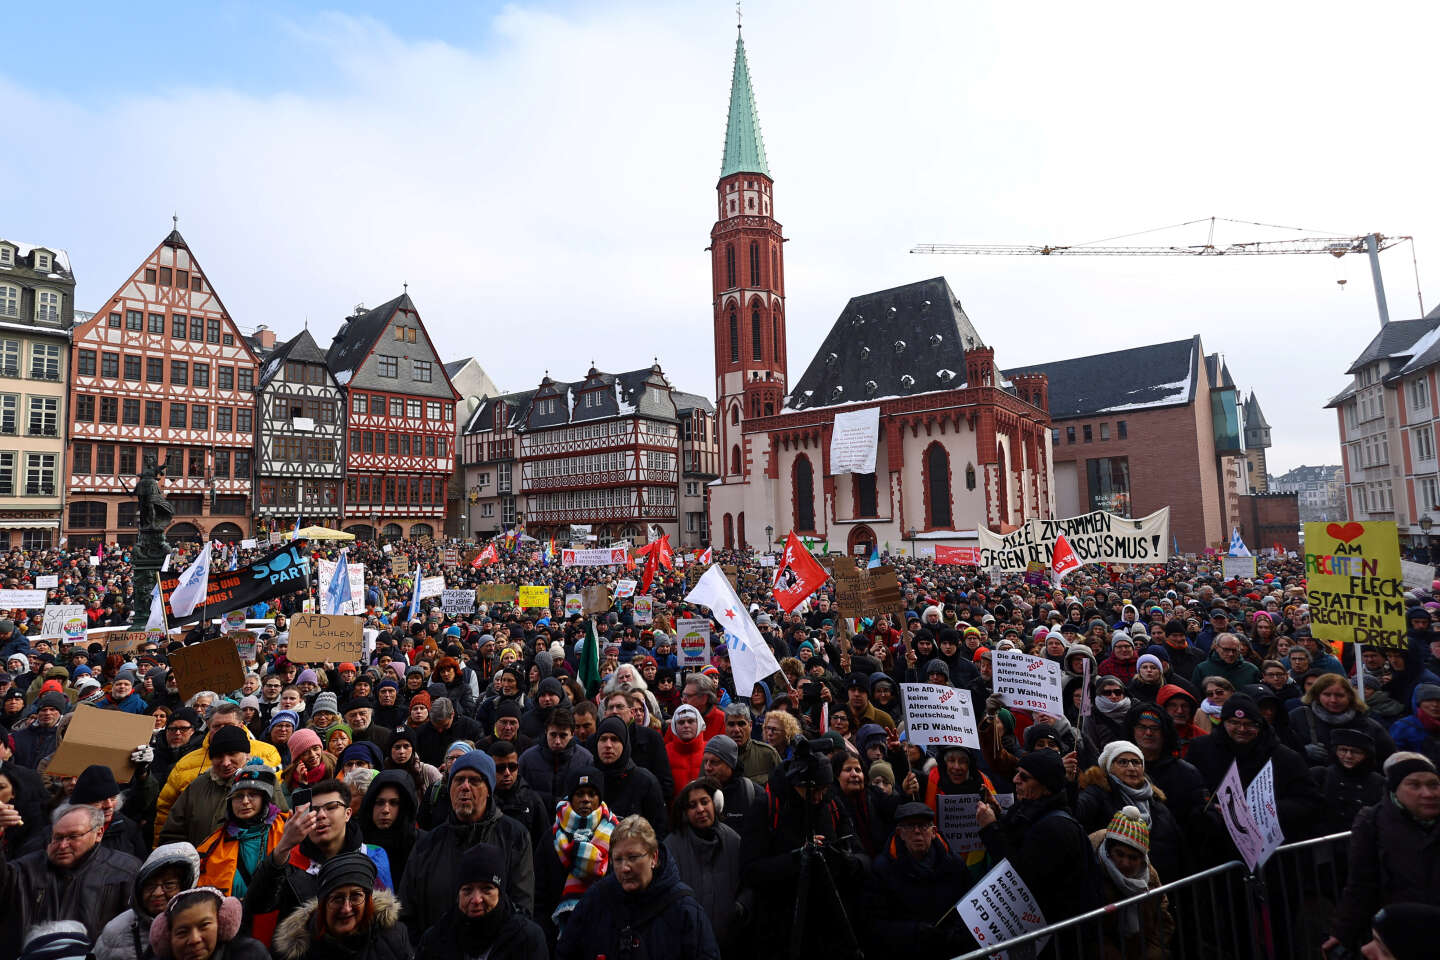 لماذا يسعى اليمين المتطرف إلى “طرد” الأجانب في ألمانيا؟